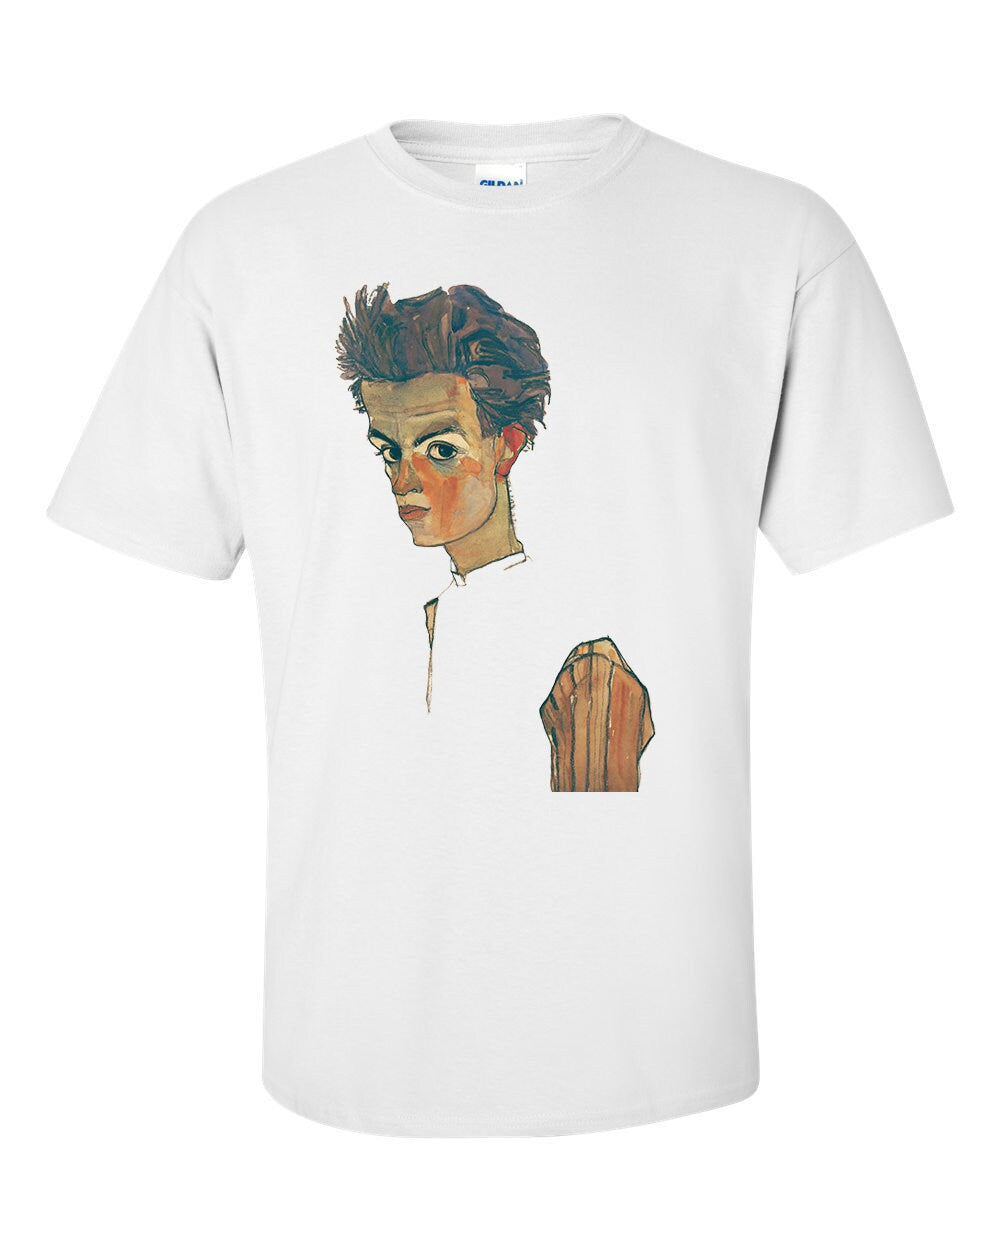 Self Portrait By Egon Schiele Fine Art Mens T-Shirt